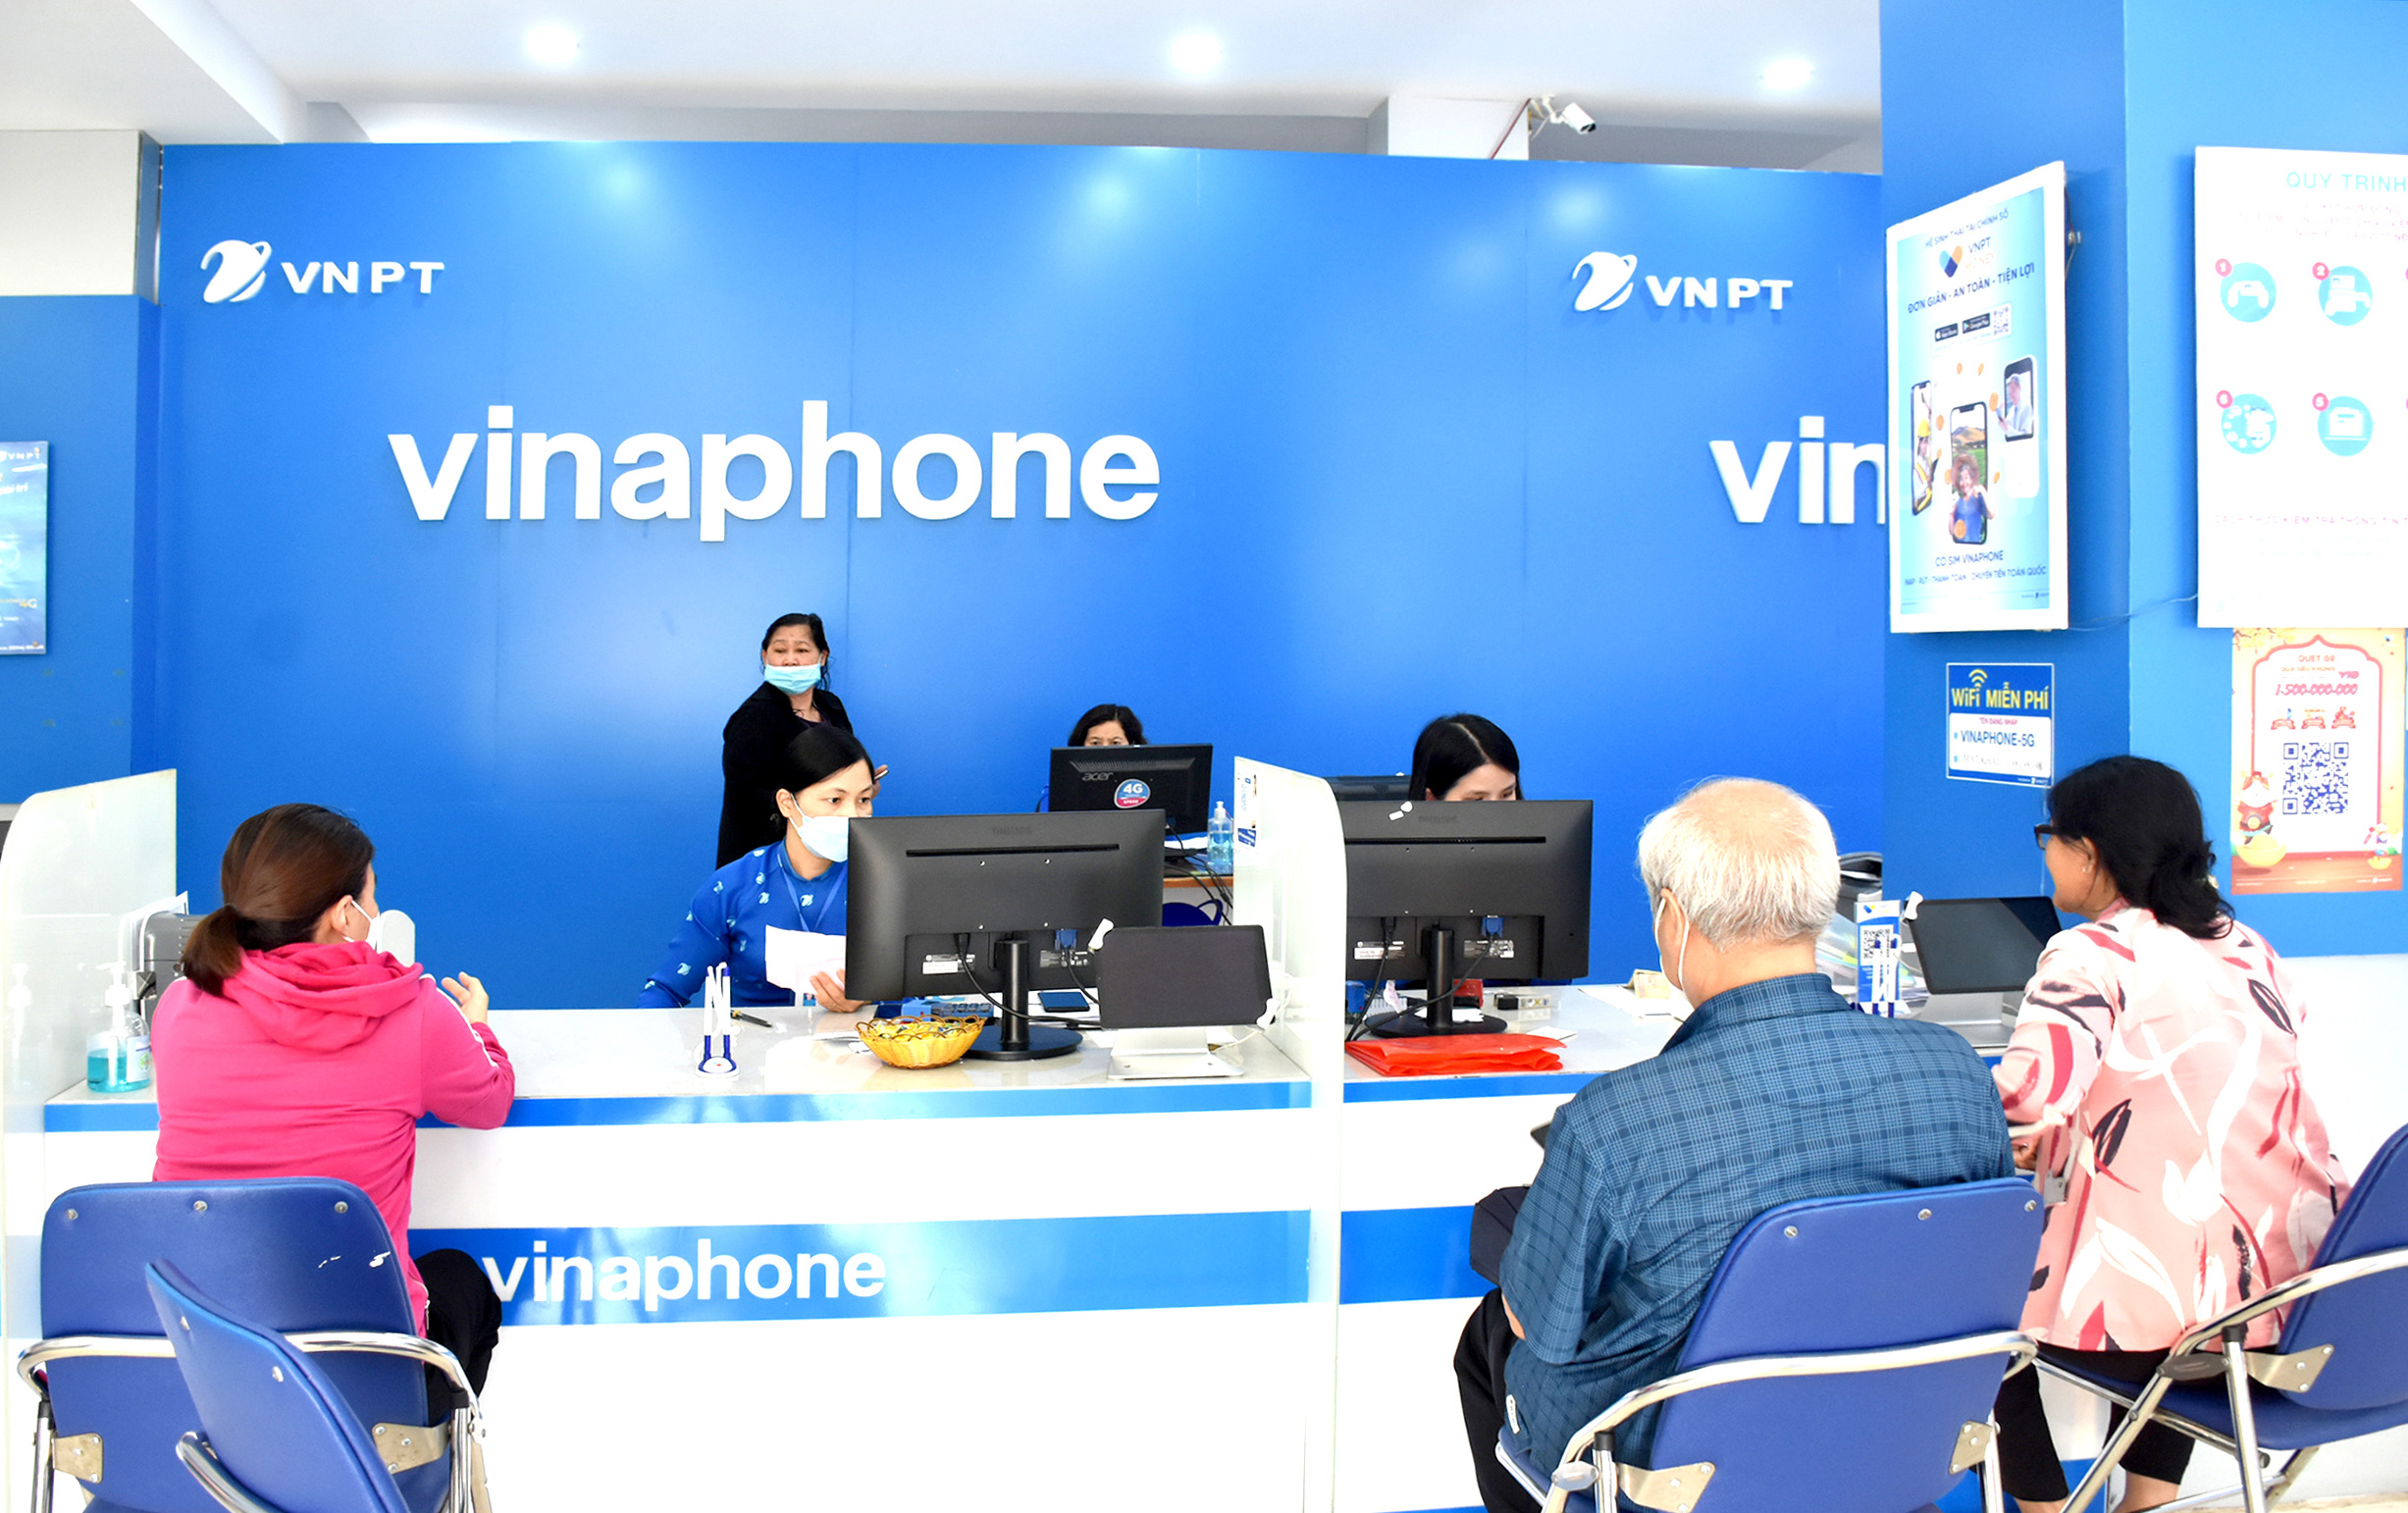 Các nhà mạng đã chuẩn bị kỹ lưỡng và có chính sách hỗ trợ tối đa cho người dân chuyển đổi từ 2G lên 4G.  Trong ảnh: Khách hàng giao dịch tại VNPT Vinaphone Bà Rịa-Vũng Tàu.